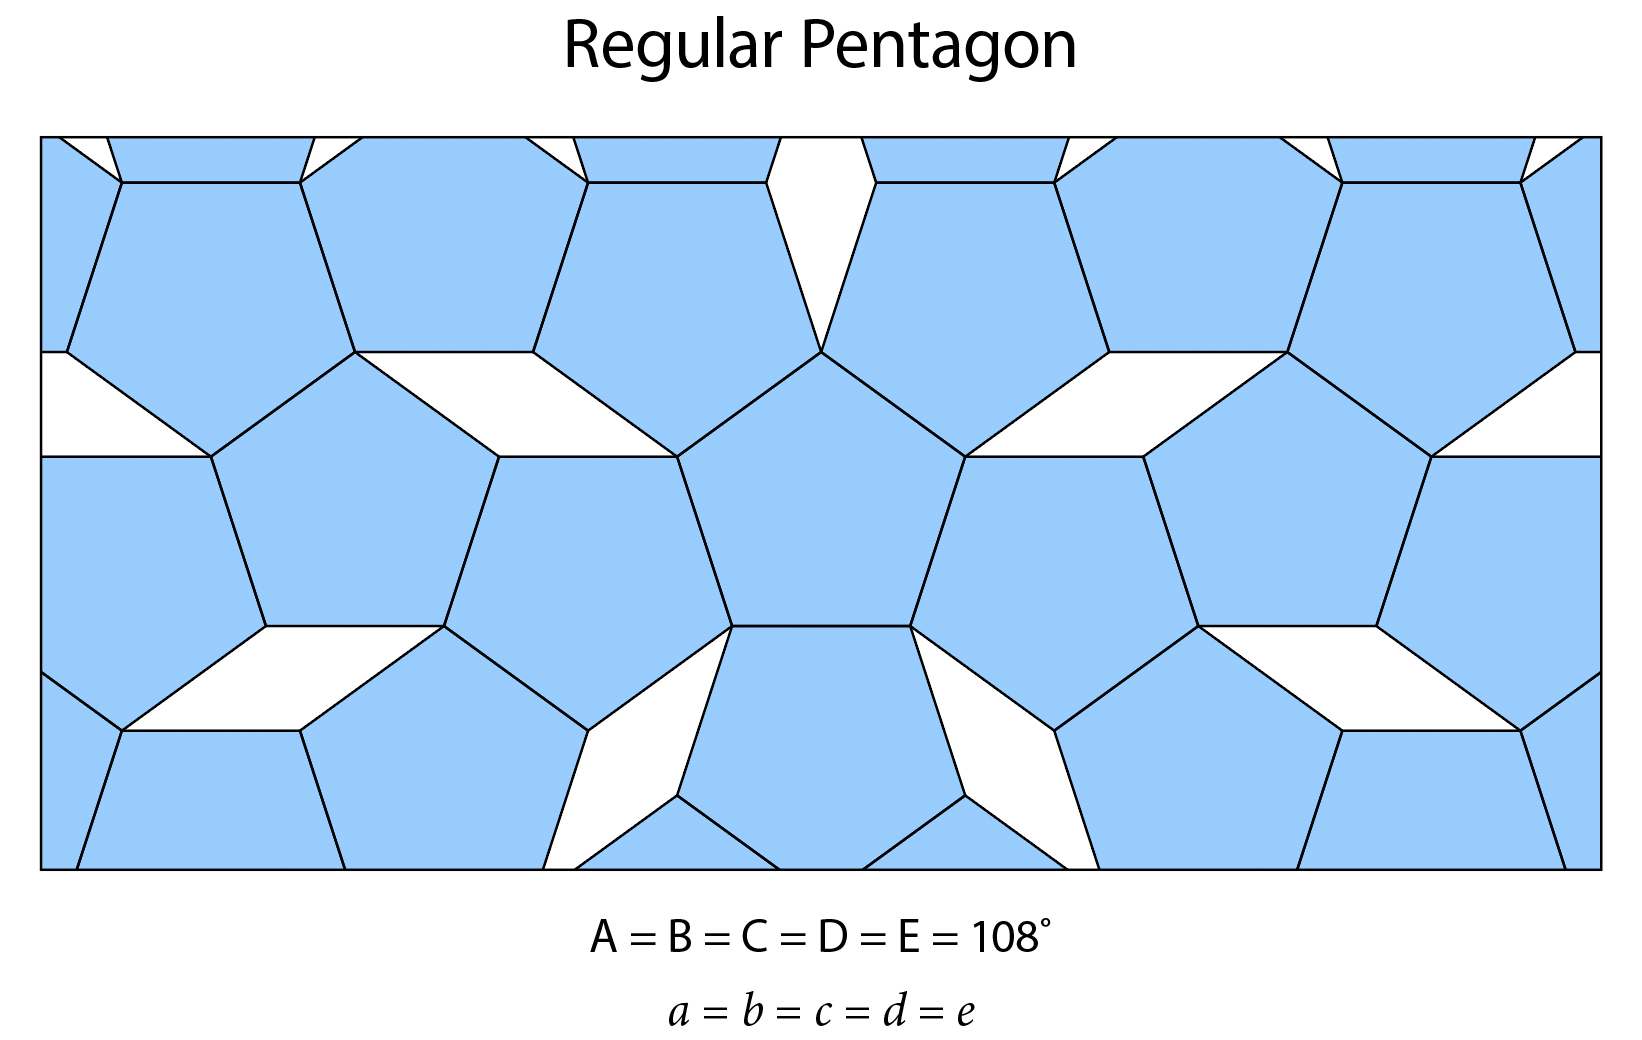 Attempt to tesselate a regular pentagon